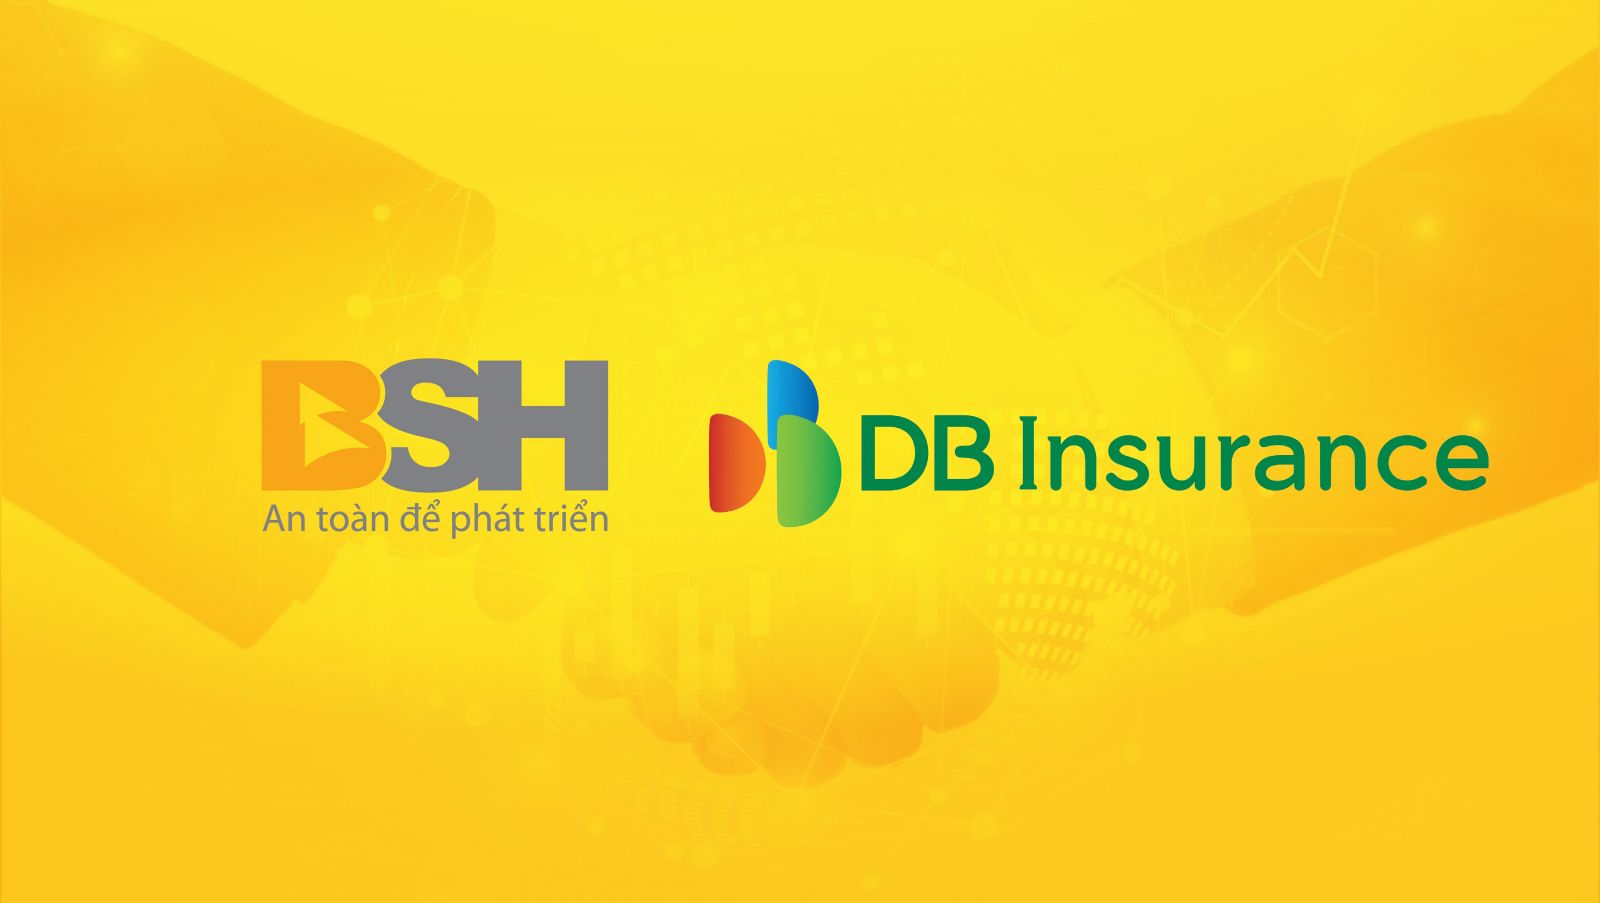 Bảo hiểm DB (Hàn Quốc) chính thức ký hợp đồng mua 75% cổ phần Bảo hiểm BSH.